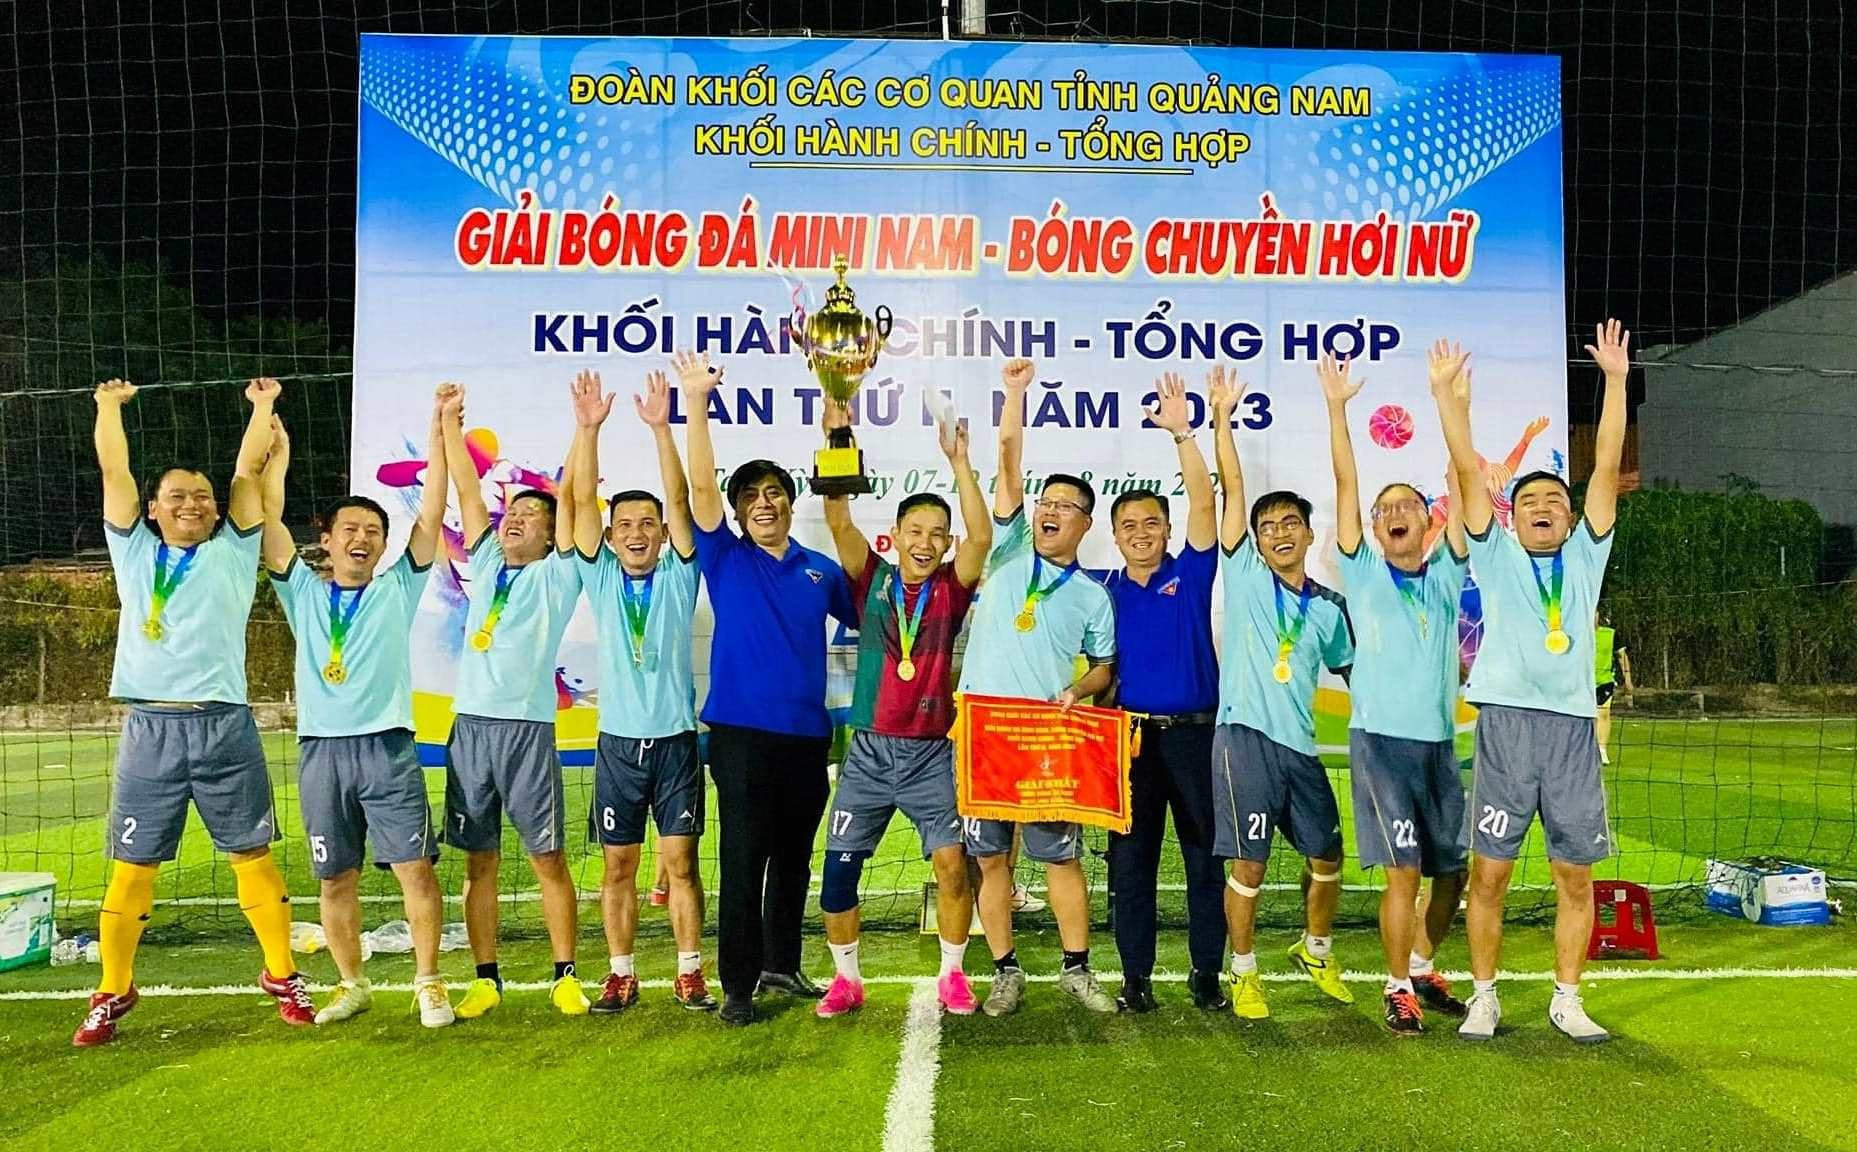 Trao cúp vô địch giải bóng đá nam cho Liên quân Sở Tài chính - Cục Thống kê - Cục Hải quan.